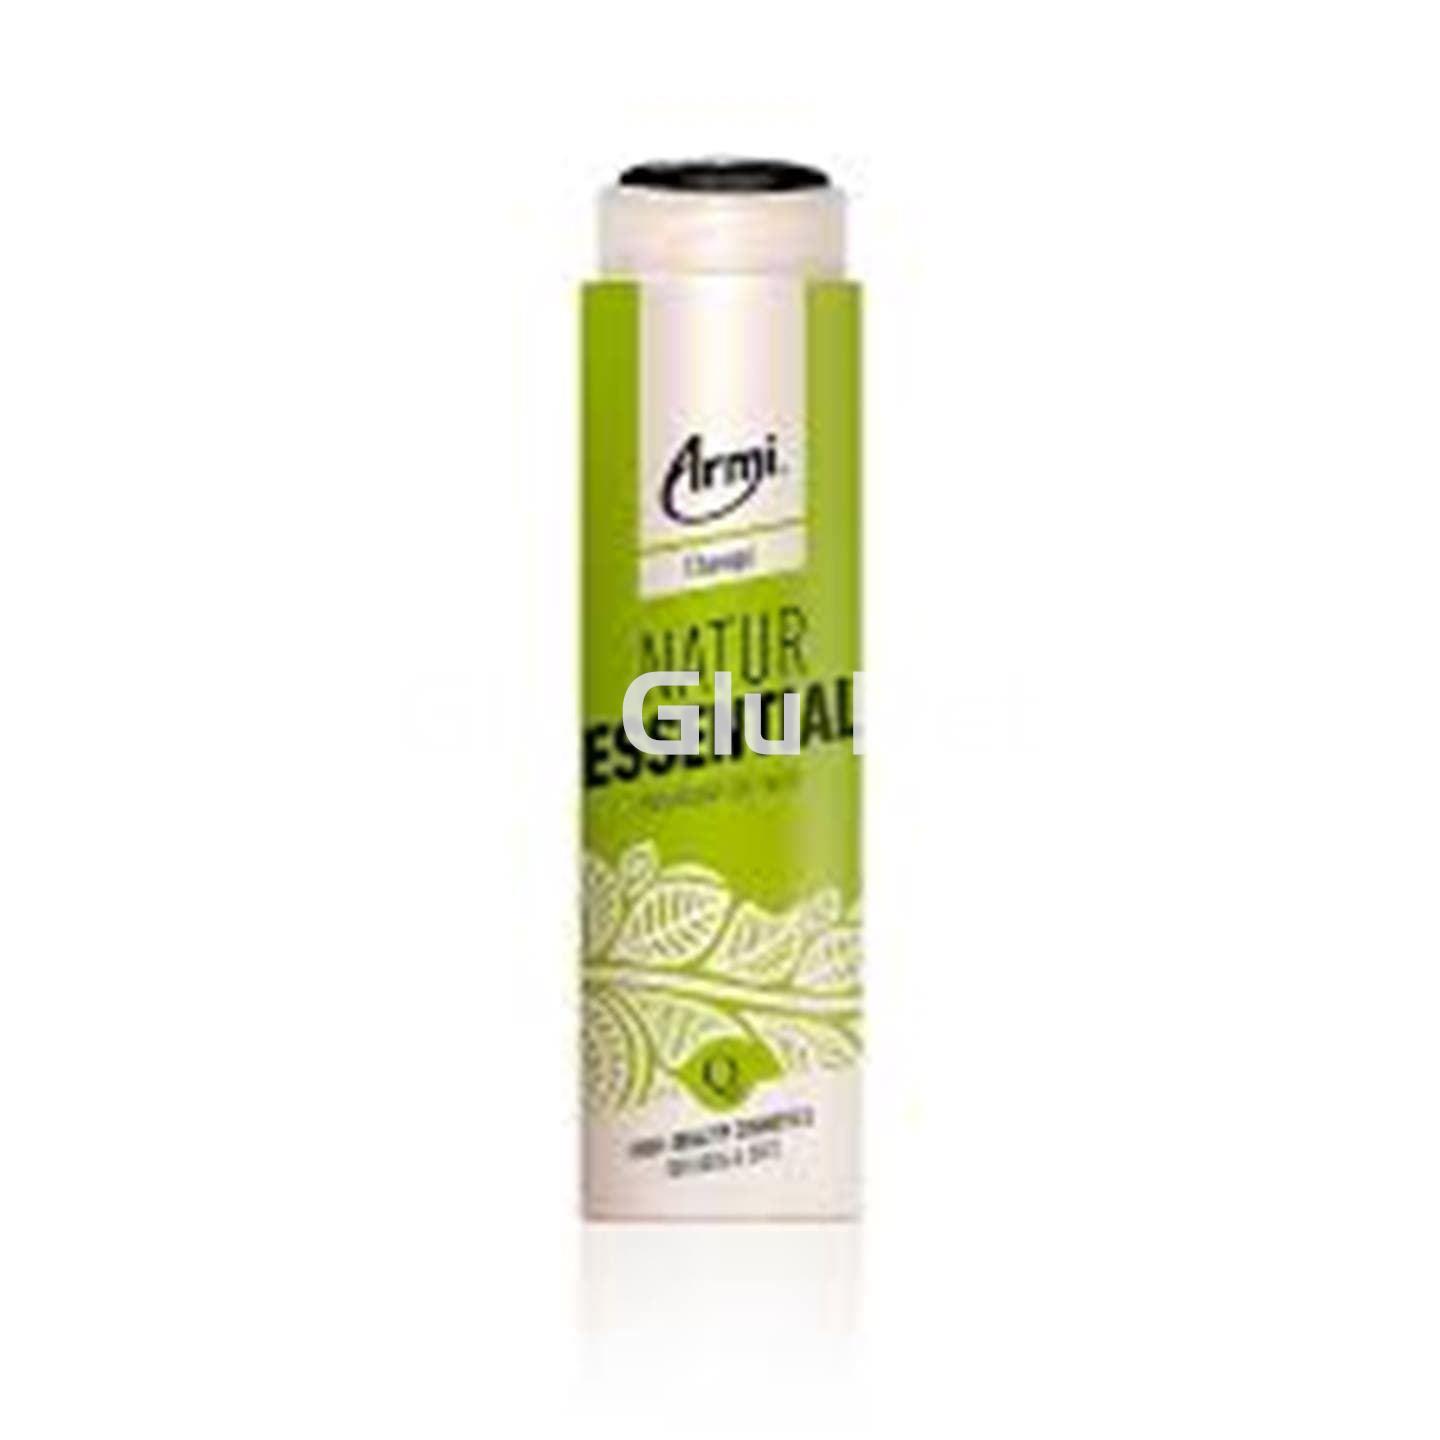 Armi Natur Essential Shampoo 225ml. - Image 1